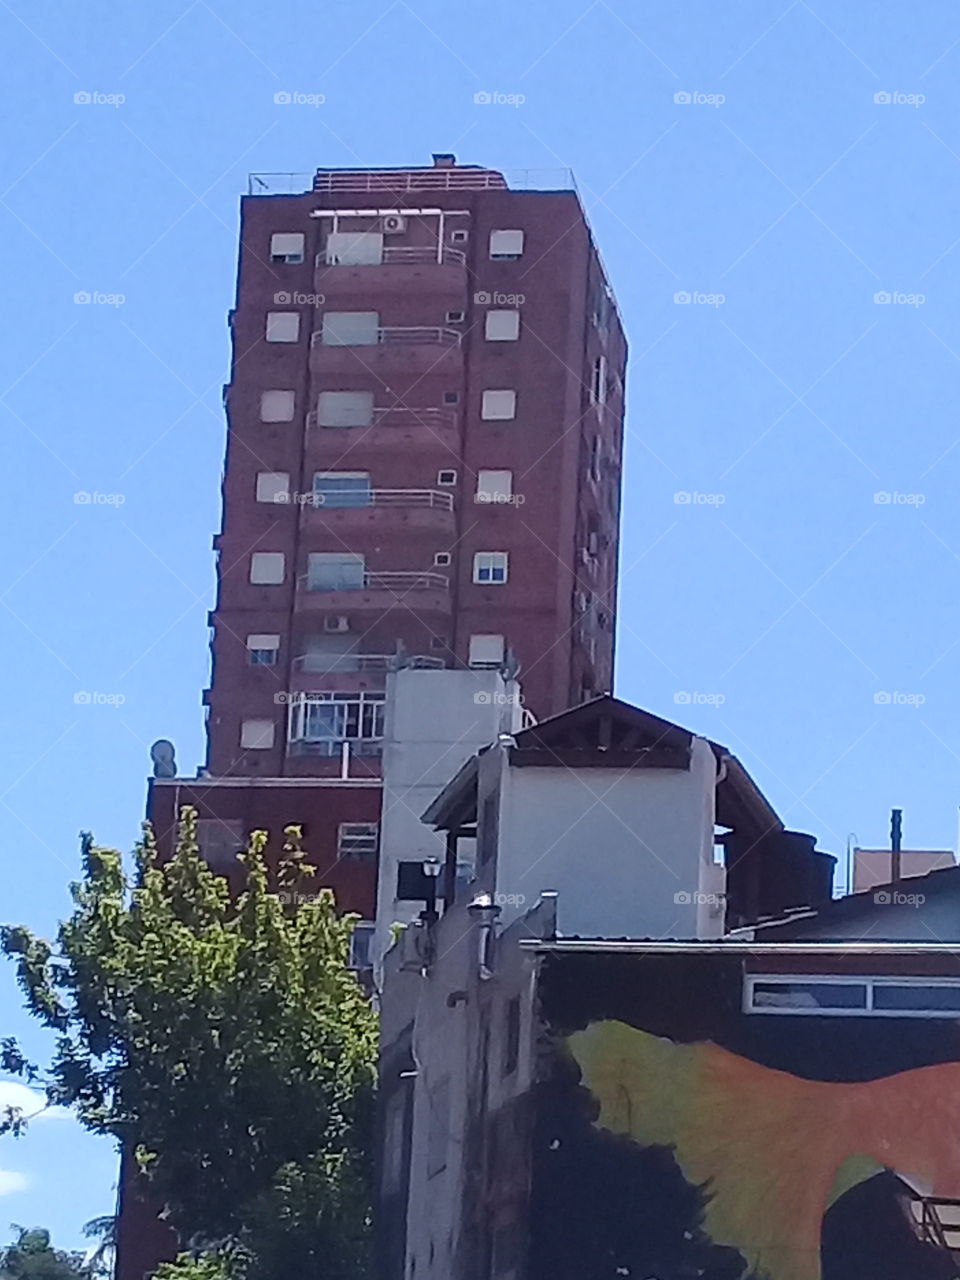 imagen de un rascacielos visto a distancia, rodeado de edificios modernos y antiguos destinados a oficinas y viviendas familiares en una céntrica avenida de la ciudad de Buenos Aires.